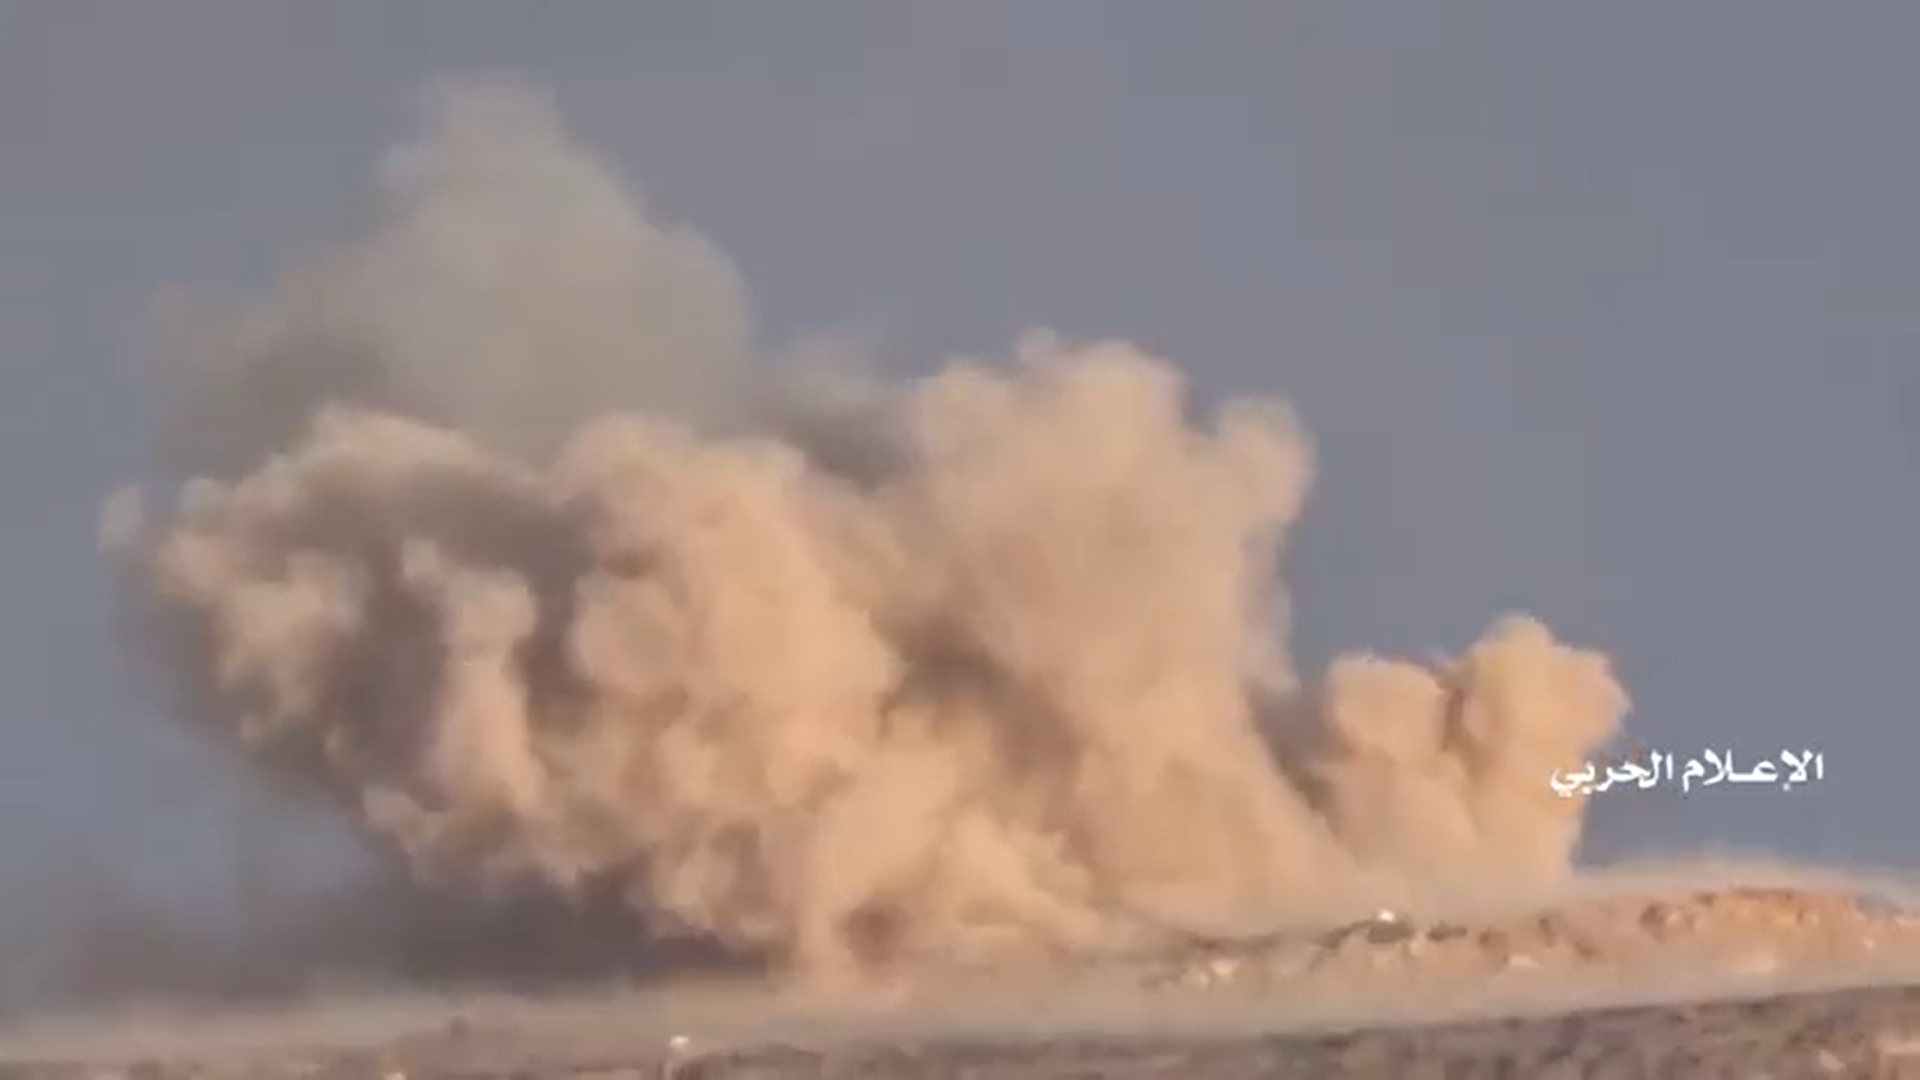 نجران – إستهداف مدرعة تابعة للجيش السعودي بصاروخ موجه في موقع الشبكة قبالة السديس